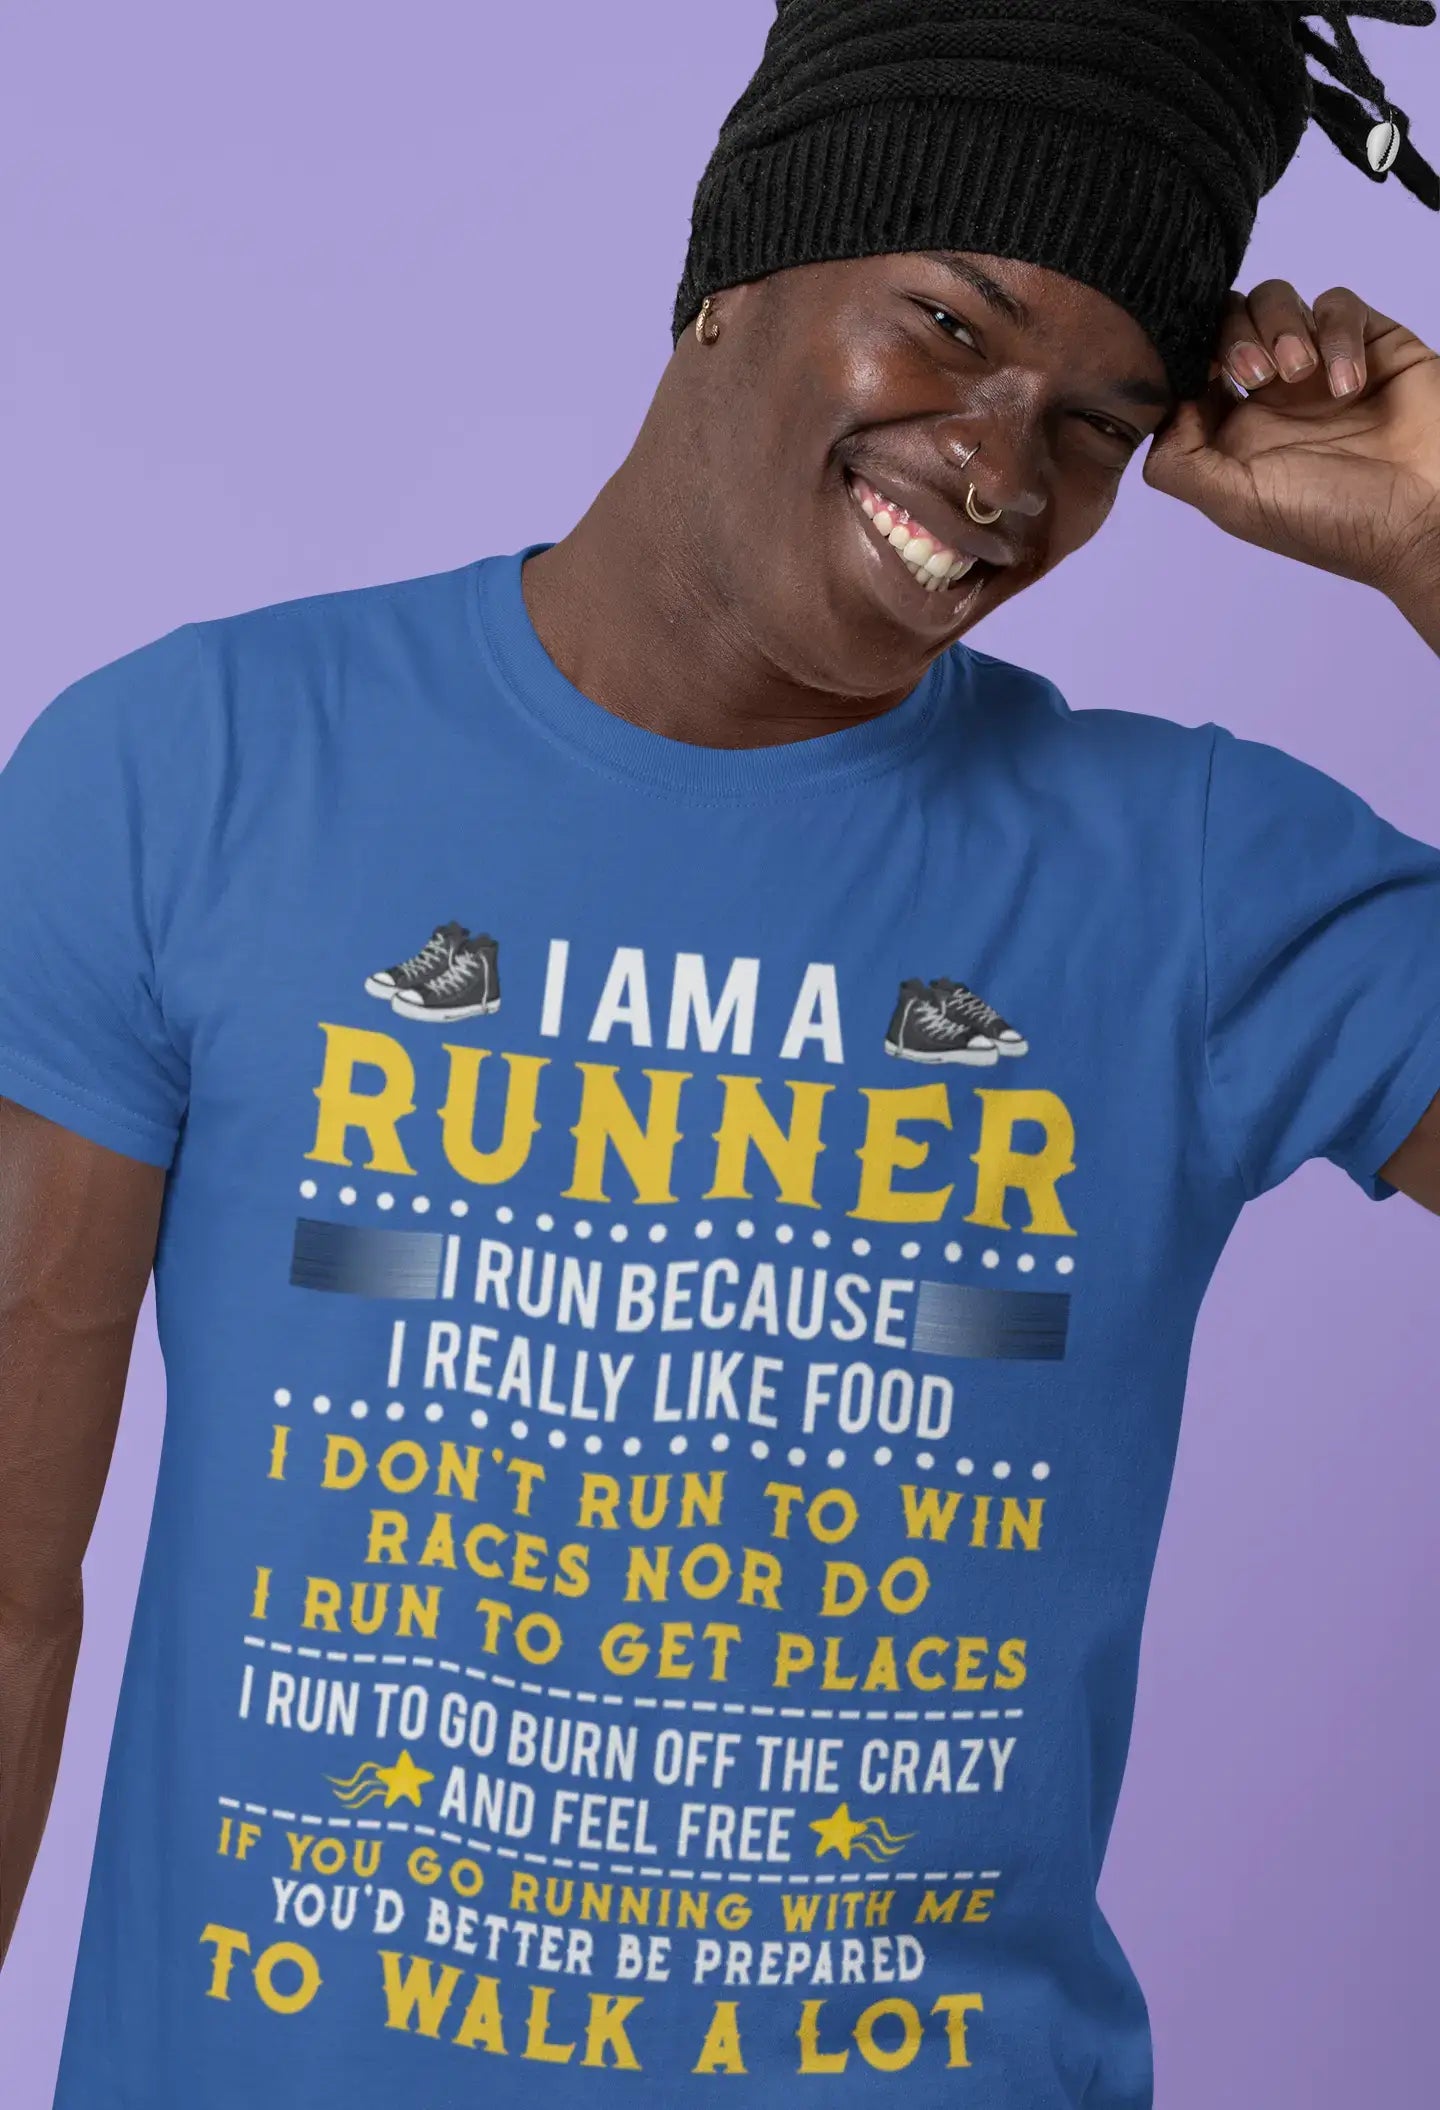 ULTRABASIC Men's Novelty T-Shirt I am a Runner - Funny Humor Tee Shirt